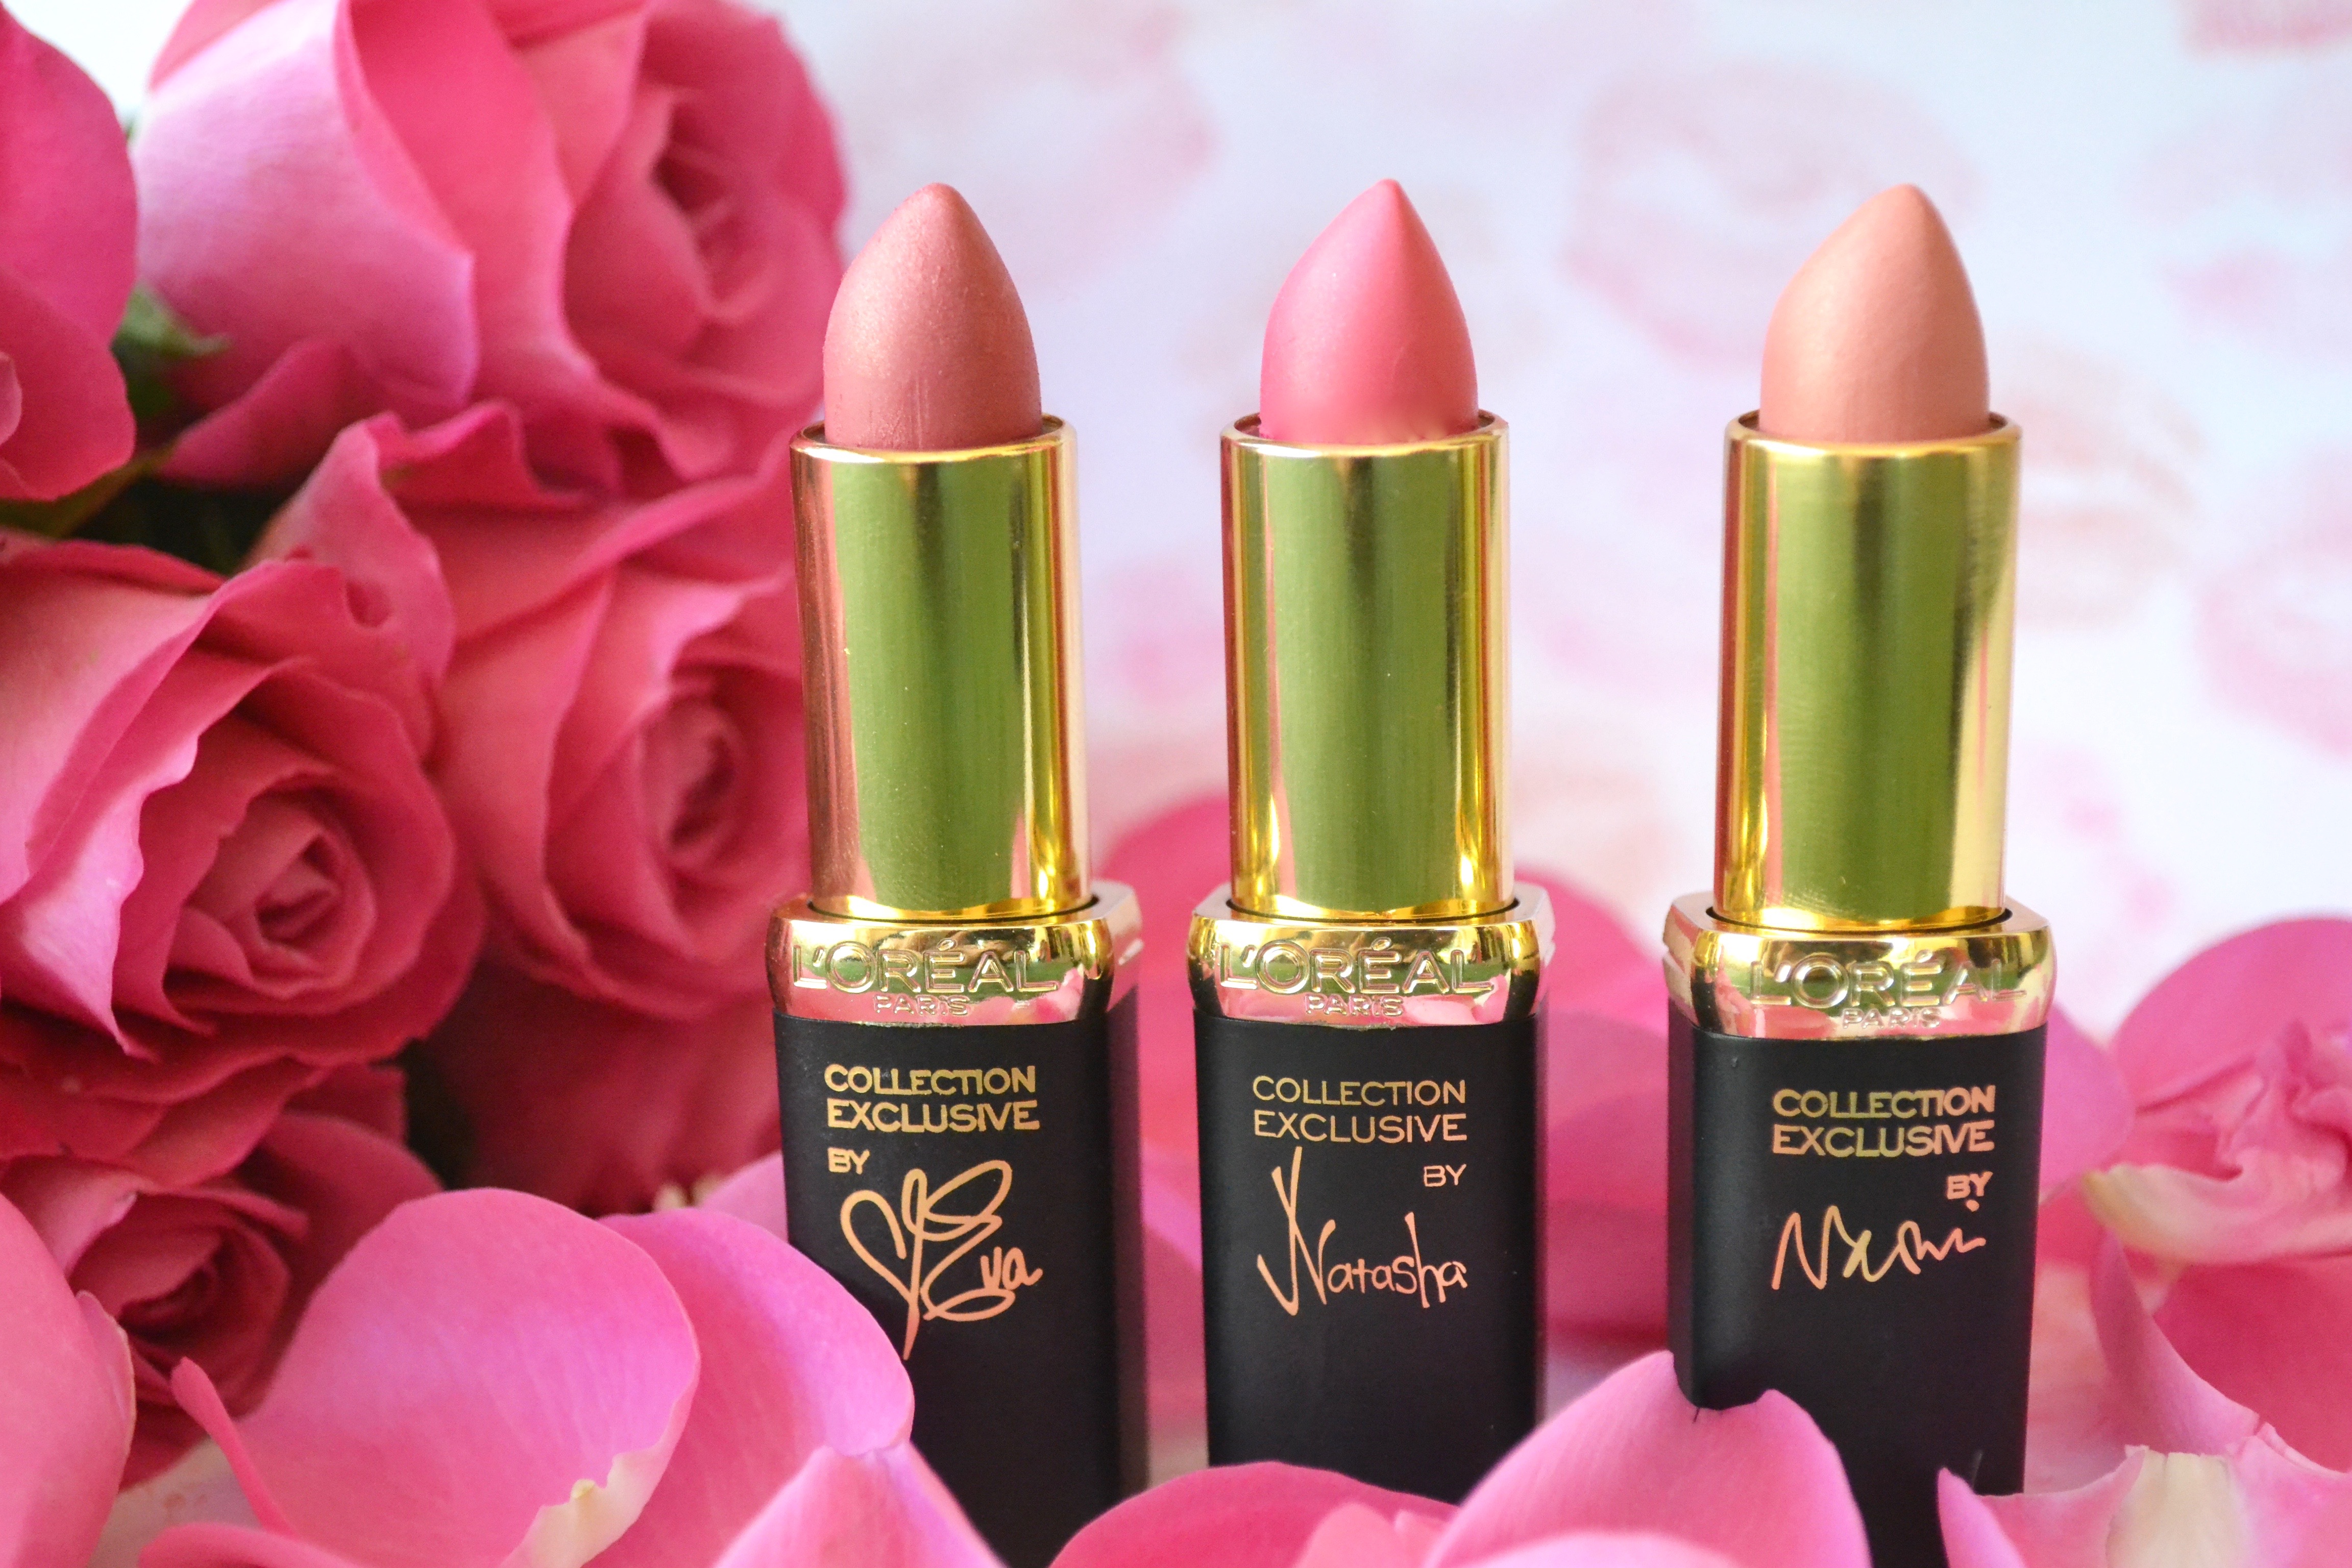 La Vie en Rose Lipstick by L’Oréal Paris.